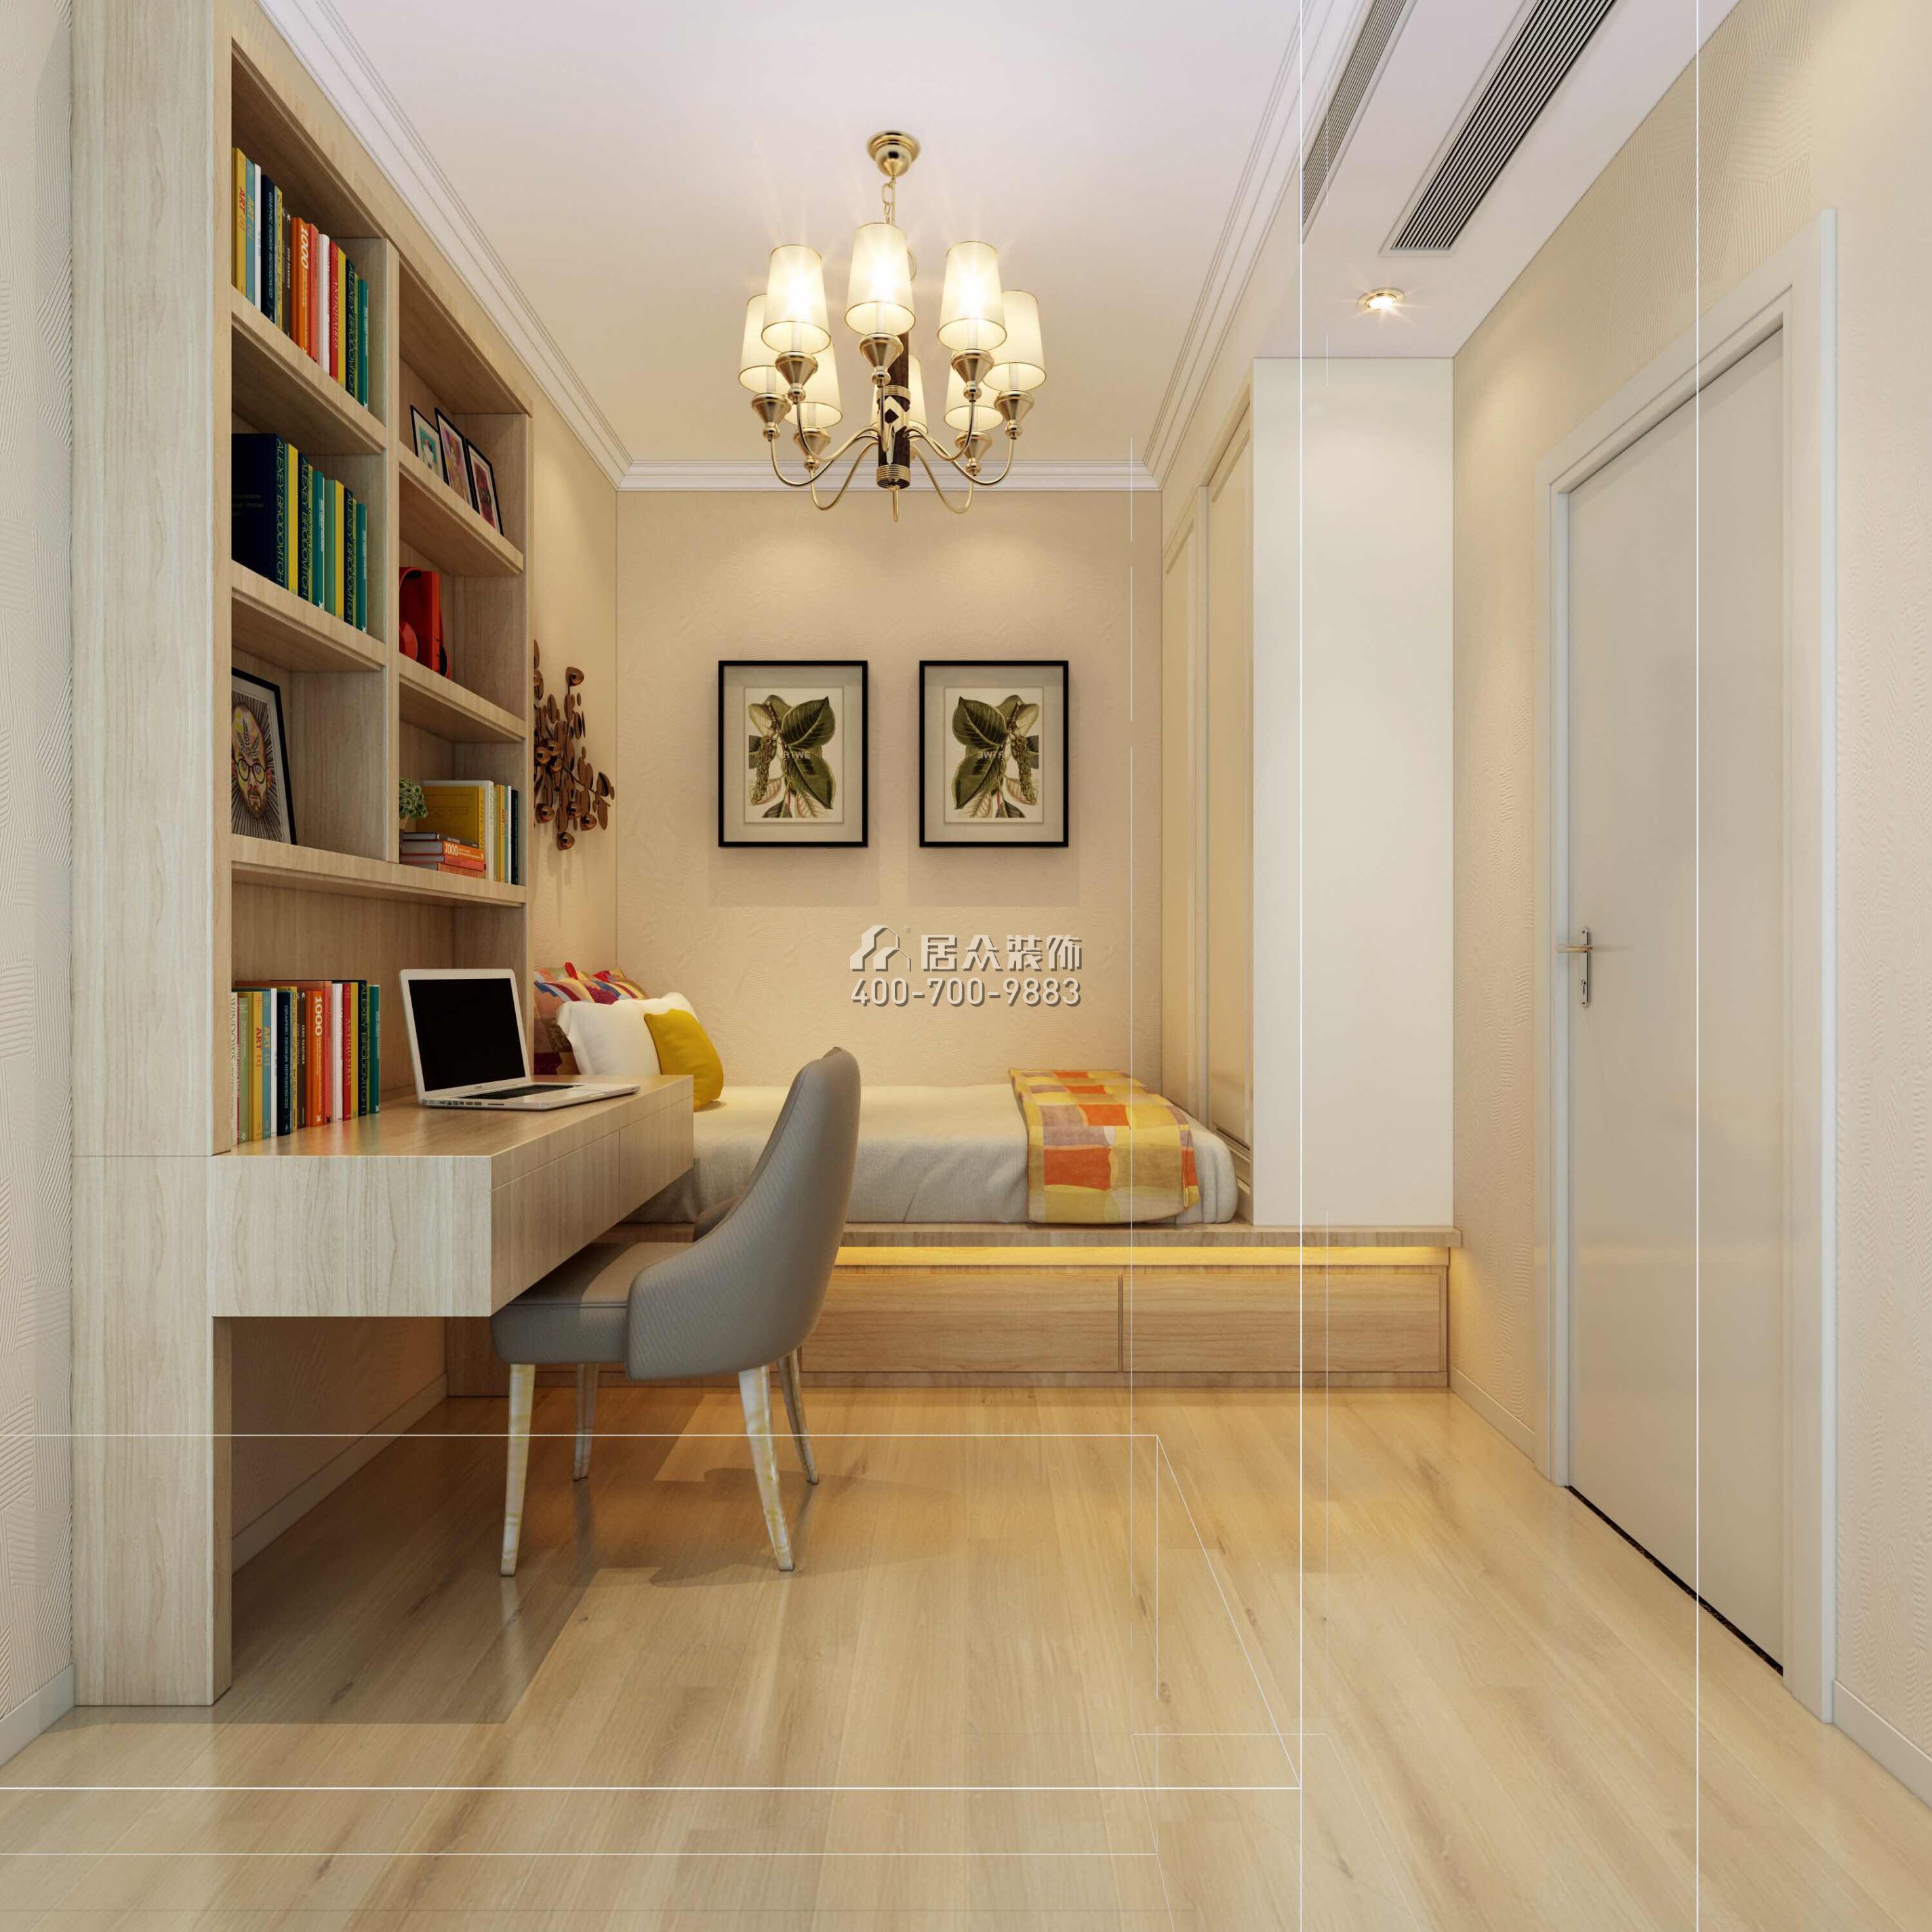 宝生midtown 88平方米现代简约风格平层户型卧室书房一体装修效果图